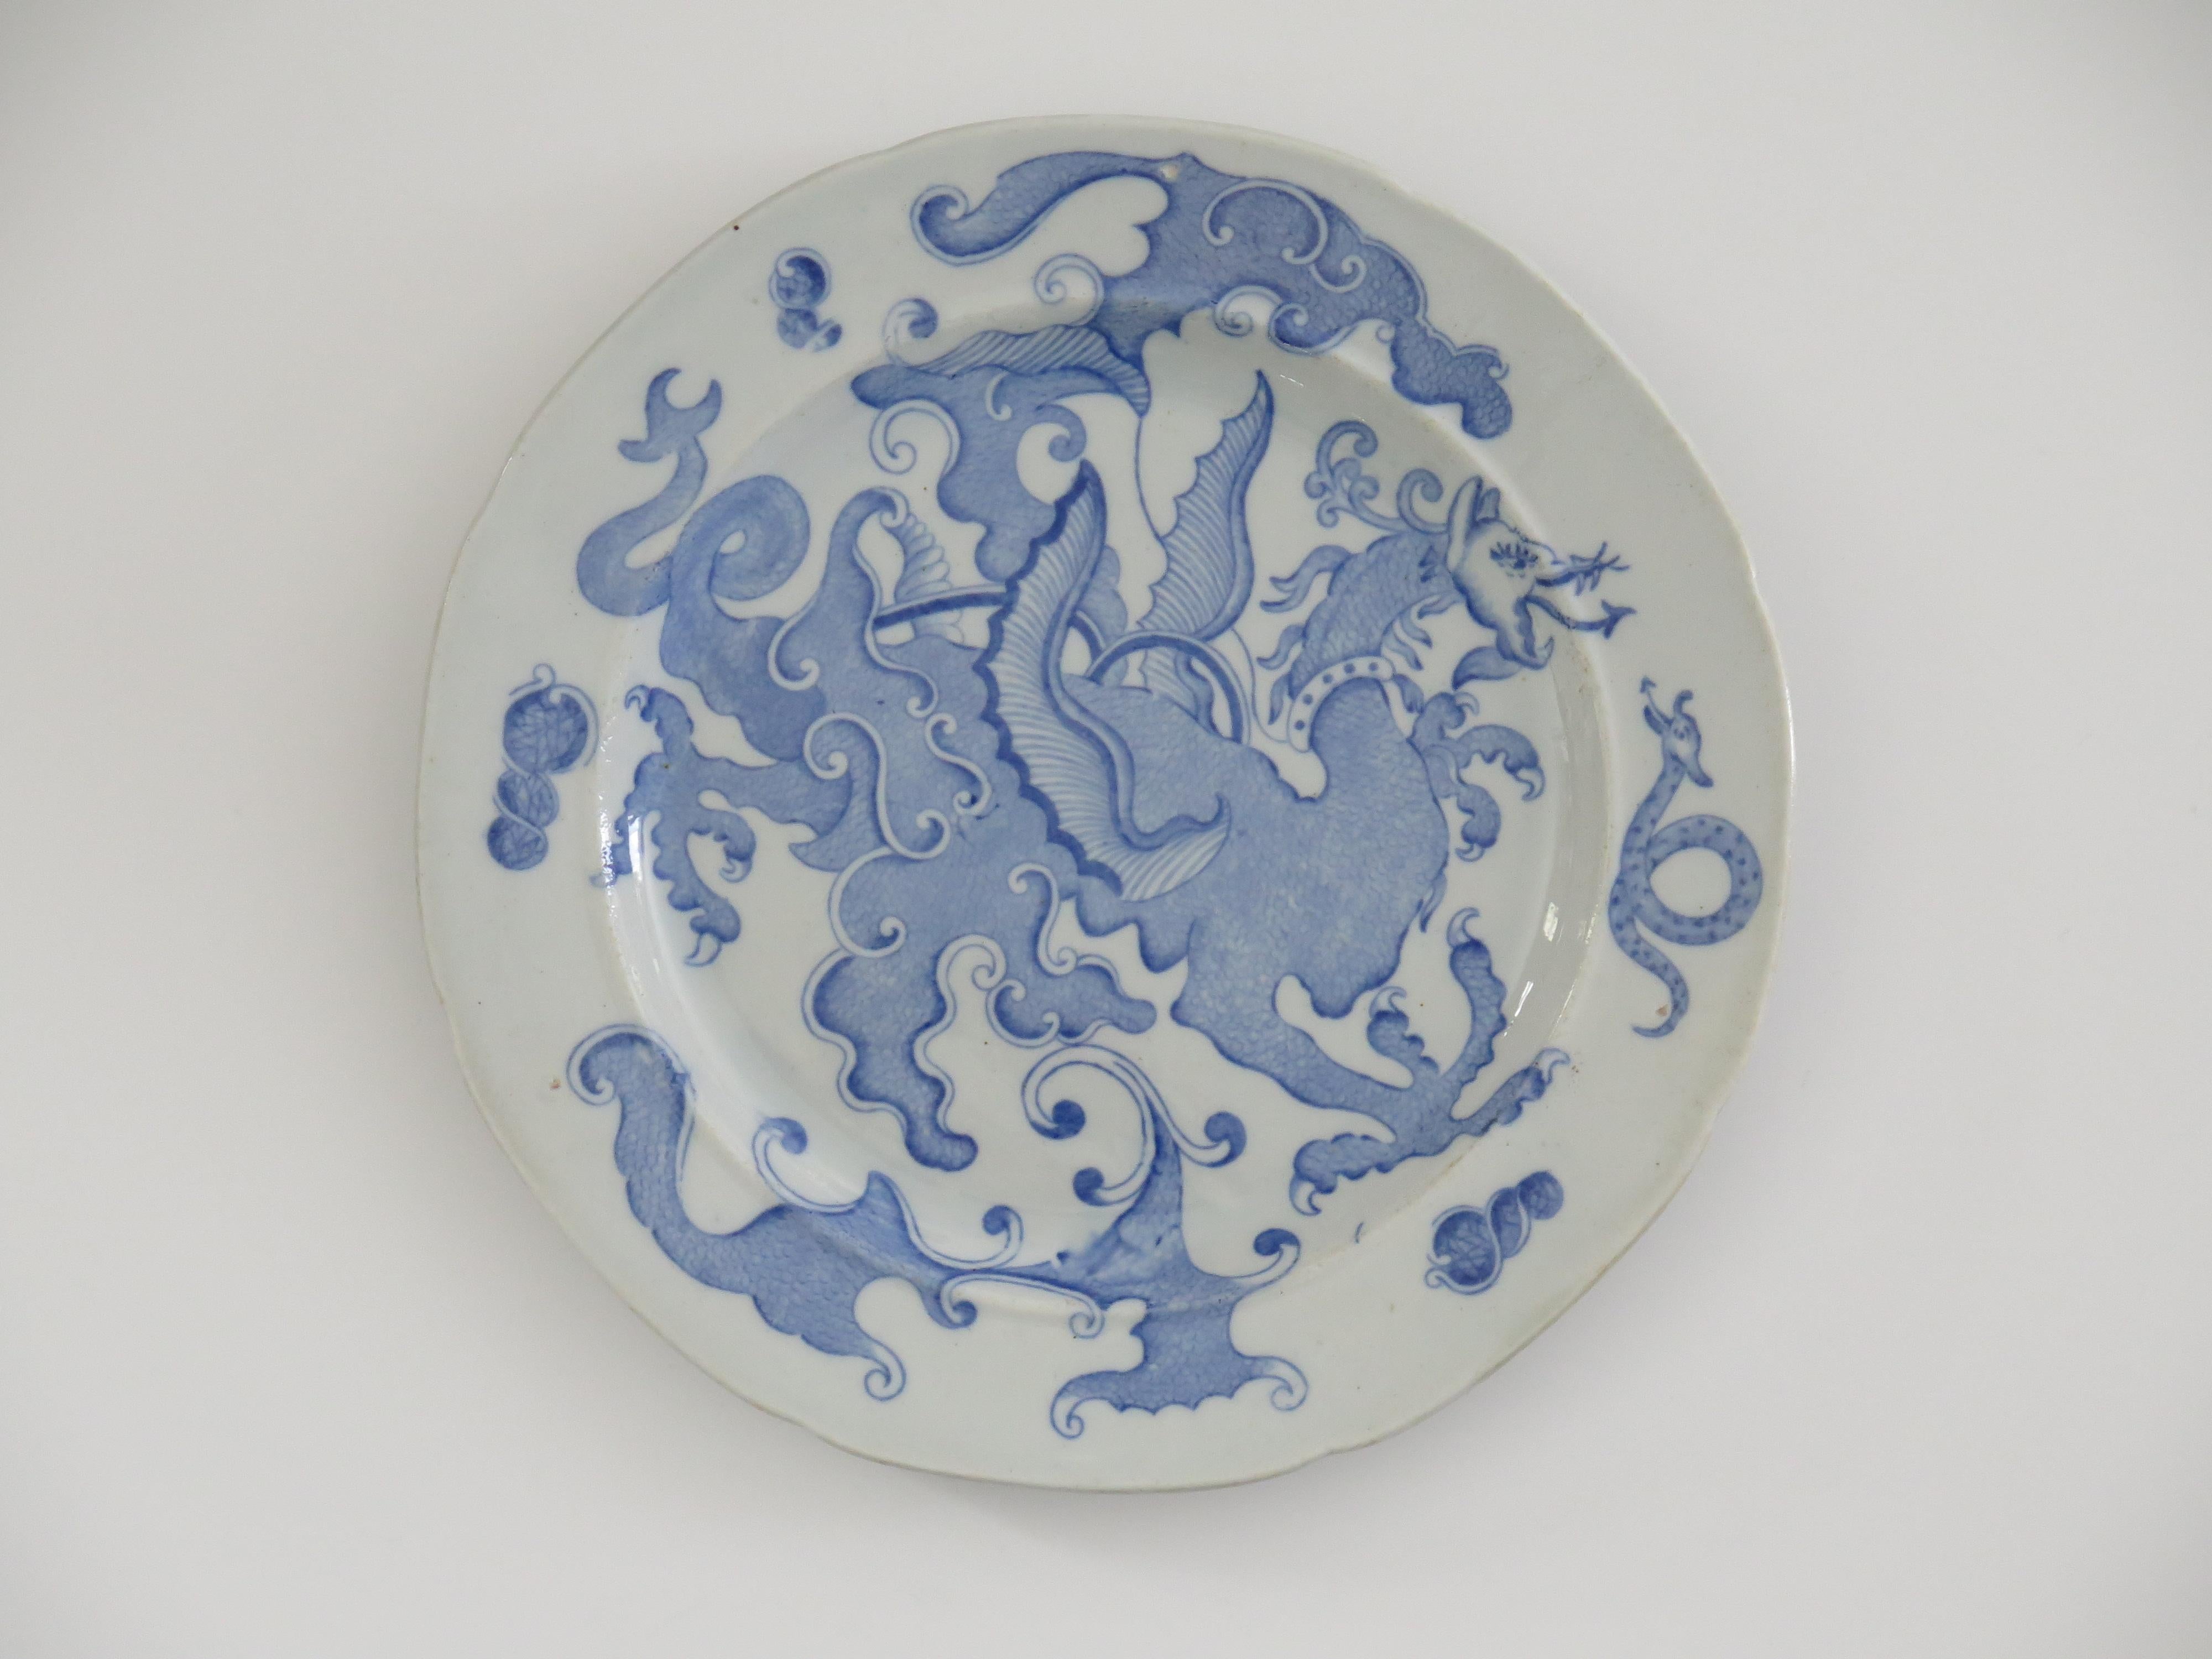 Il s'agit d'une assiette à dîner en poterie Mason's en pierre de fer, d'un rare motif de dragon chinois bleu et blanc, vers 1818.

La plaque est circulaire avec un bord dentelé.

Cette assiette est décorée de l'un des rares motifs appelés 